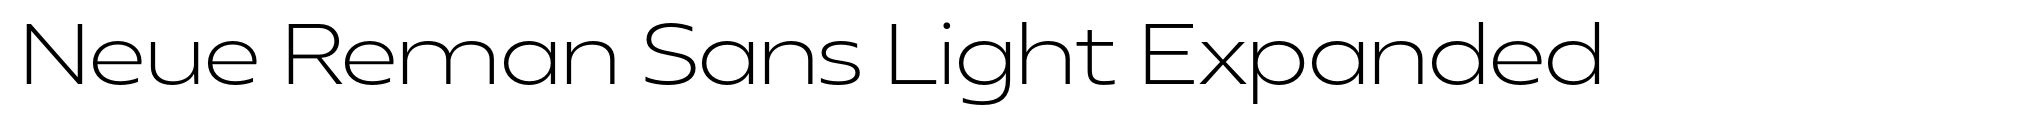 Neue Reman Sans Light Expanded image